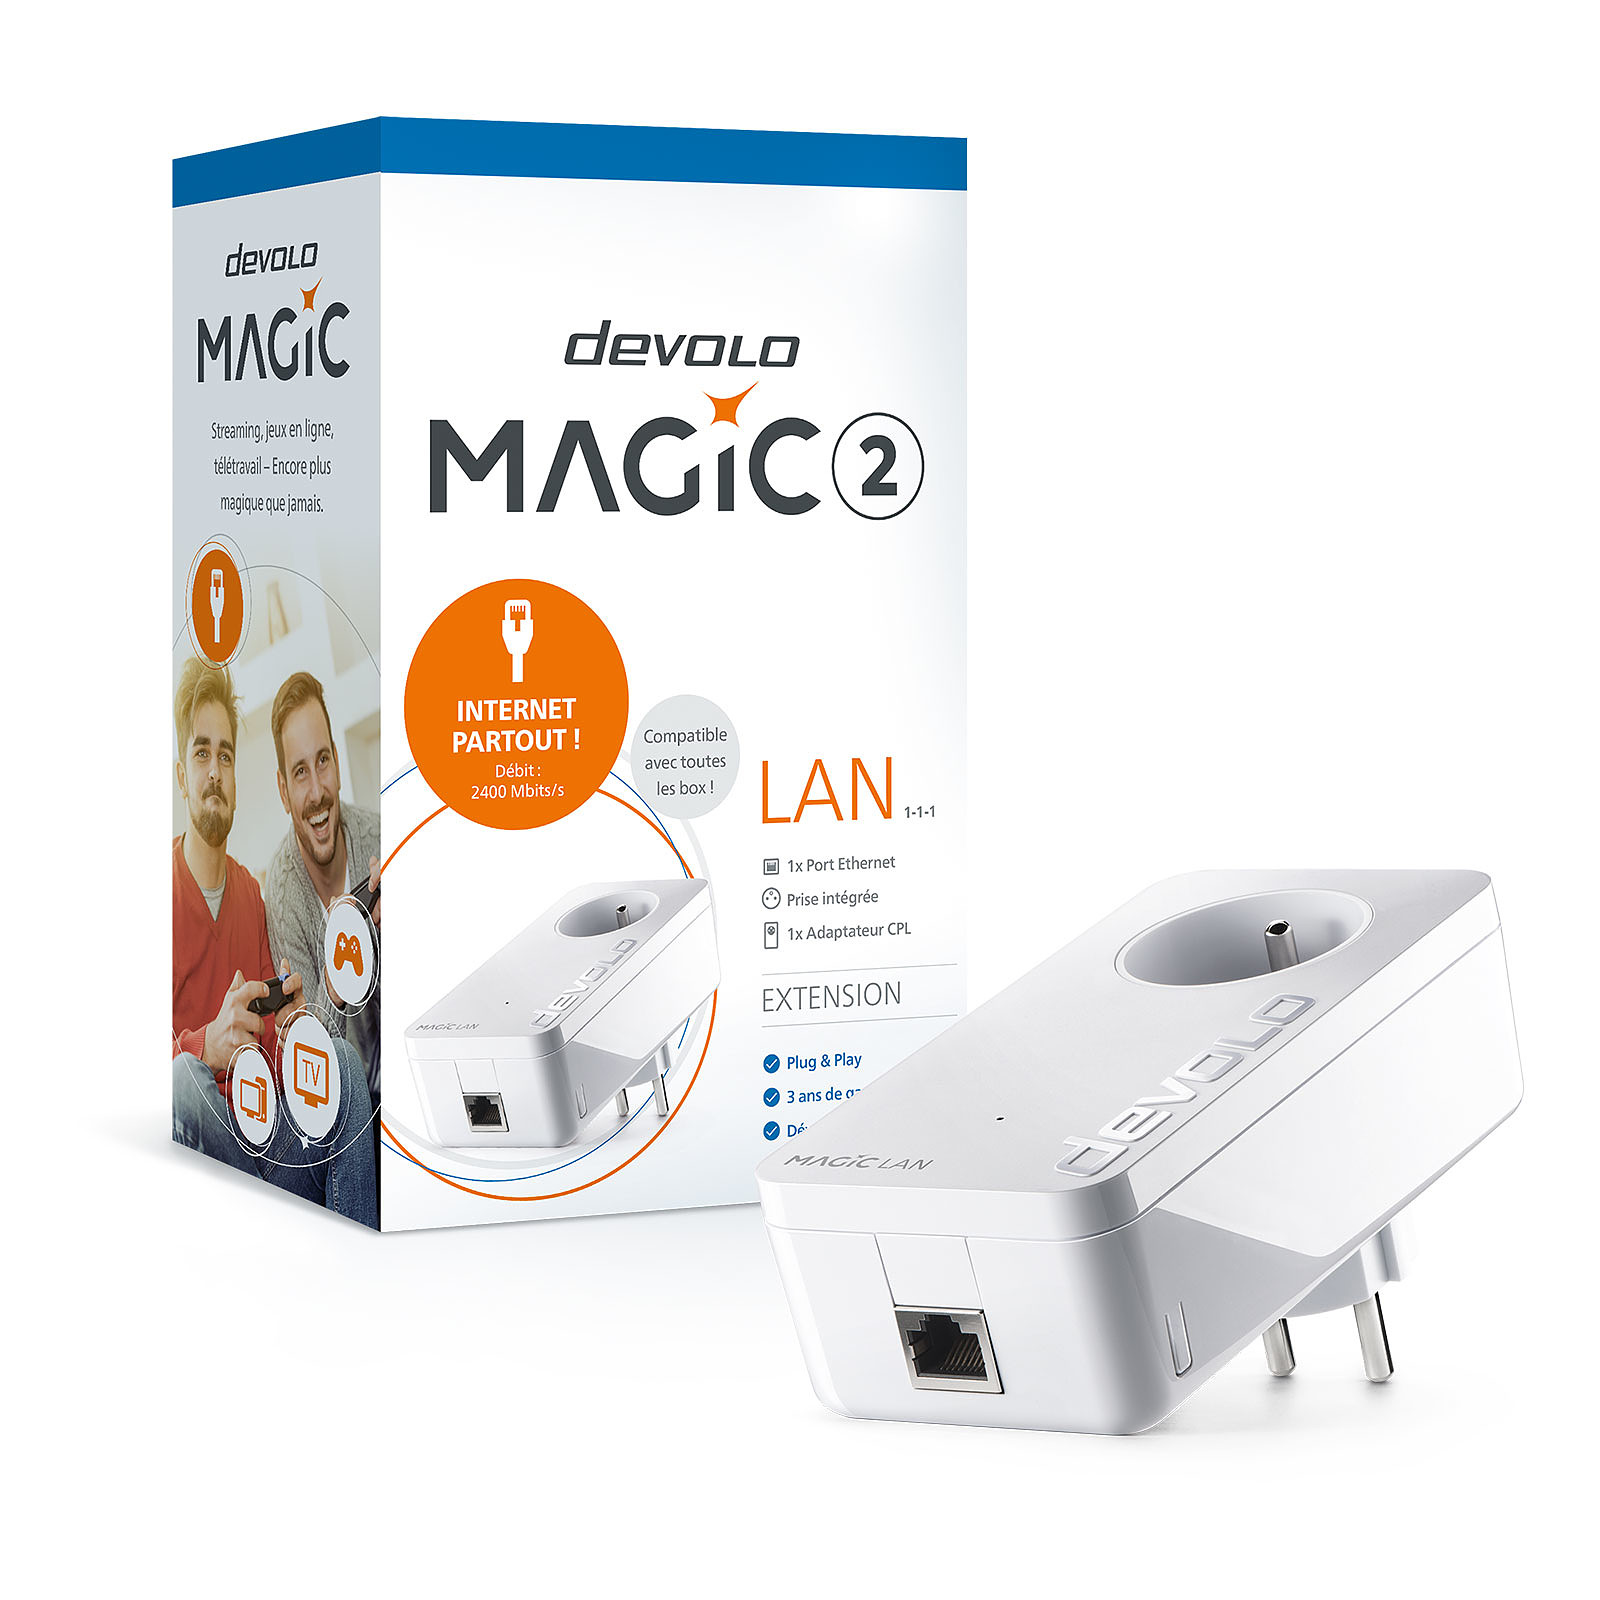 devolo Magic 2 LAN - CPL Devolo AG